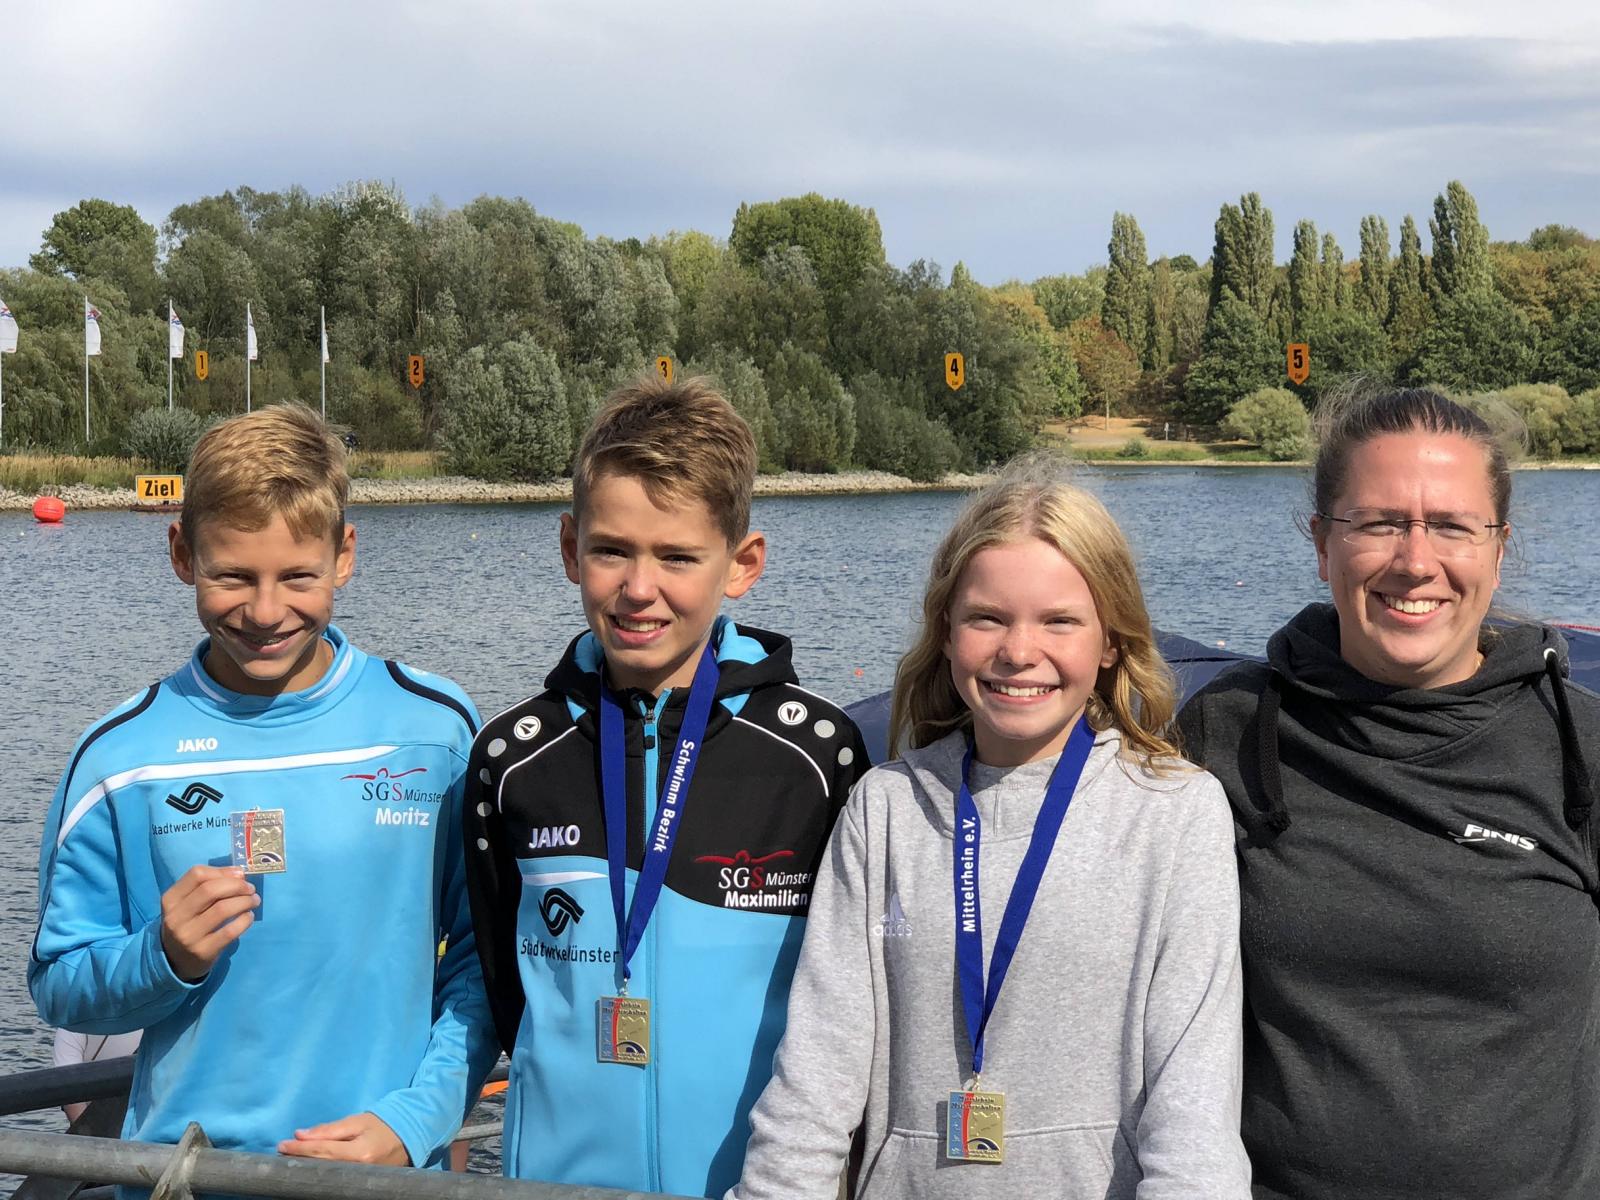 Jolina Widders und Maximilian Kassenbrock gewinnen GOLD-Medaille auf 2.500m, BRONZE Medaille an Moritz Brinkmann